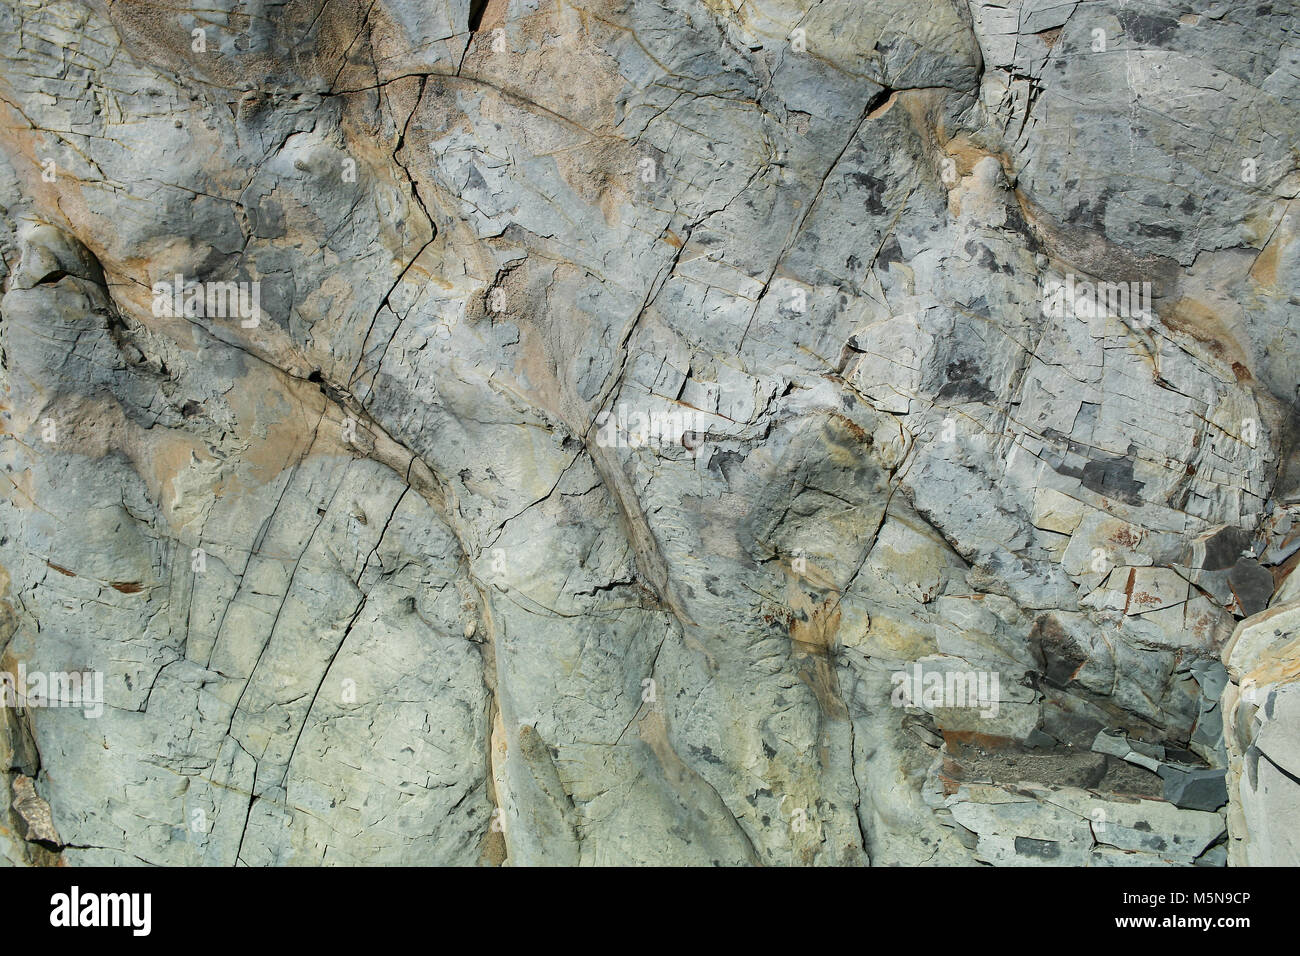 Naturstein grunge grau-braun unebene Wand mit Rissen. Stockfoto